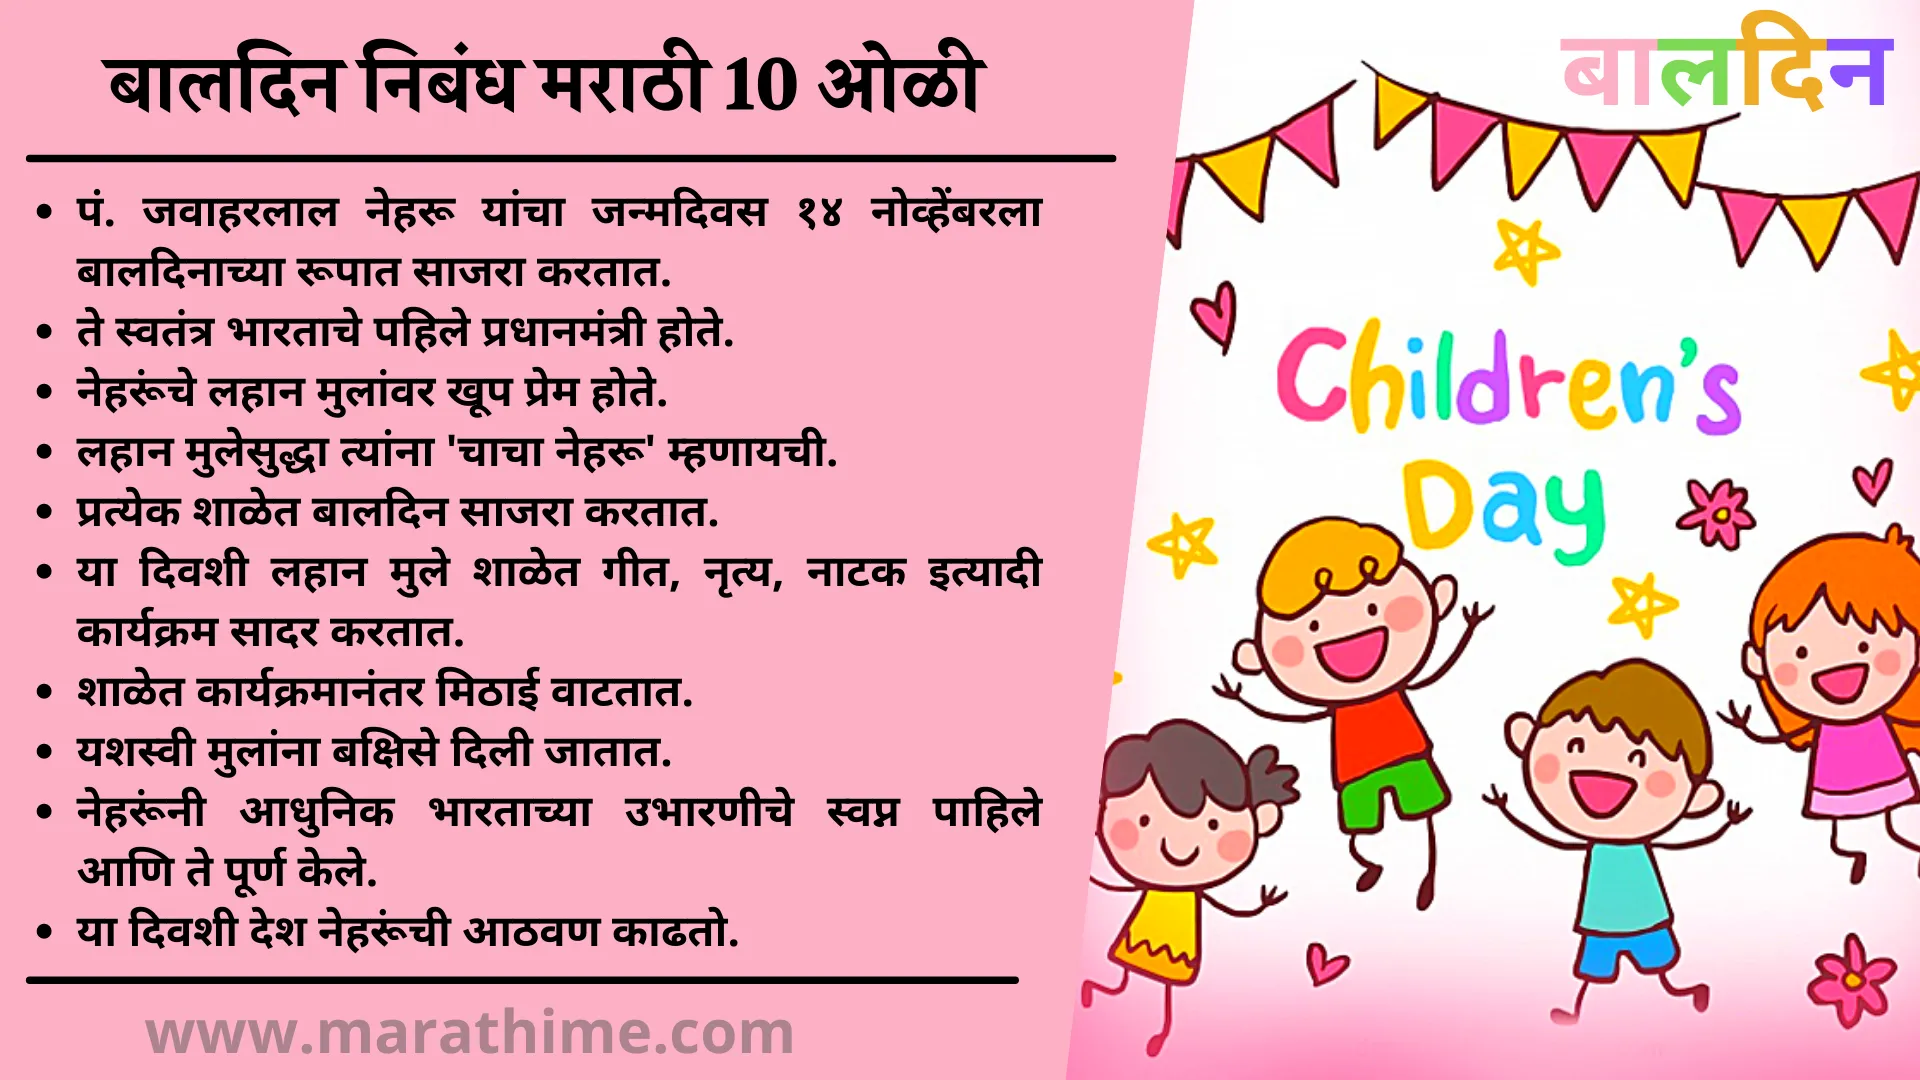 बालदिन निबंध मराठी 10 ओळी-10 lines Essay on Children's day in marathi